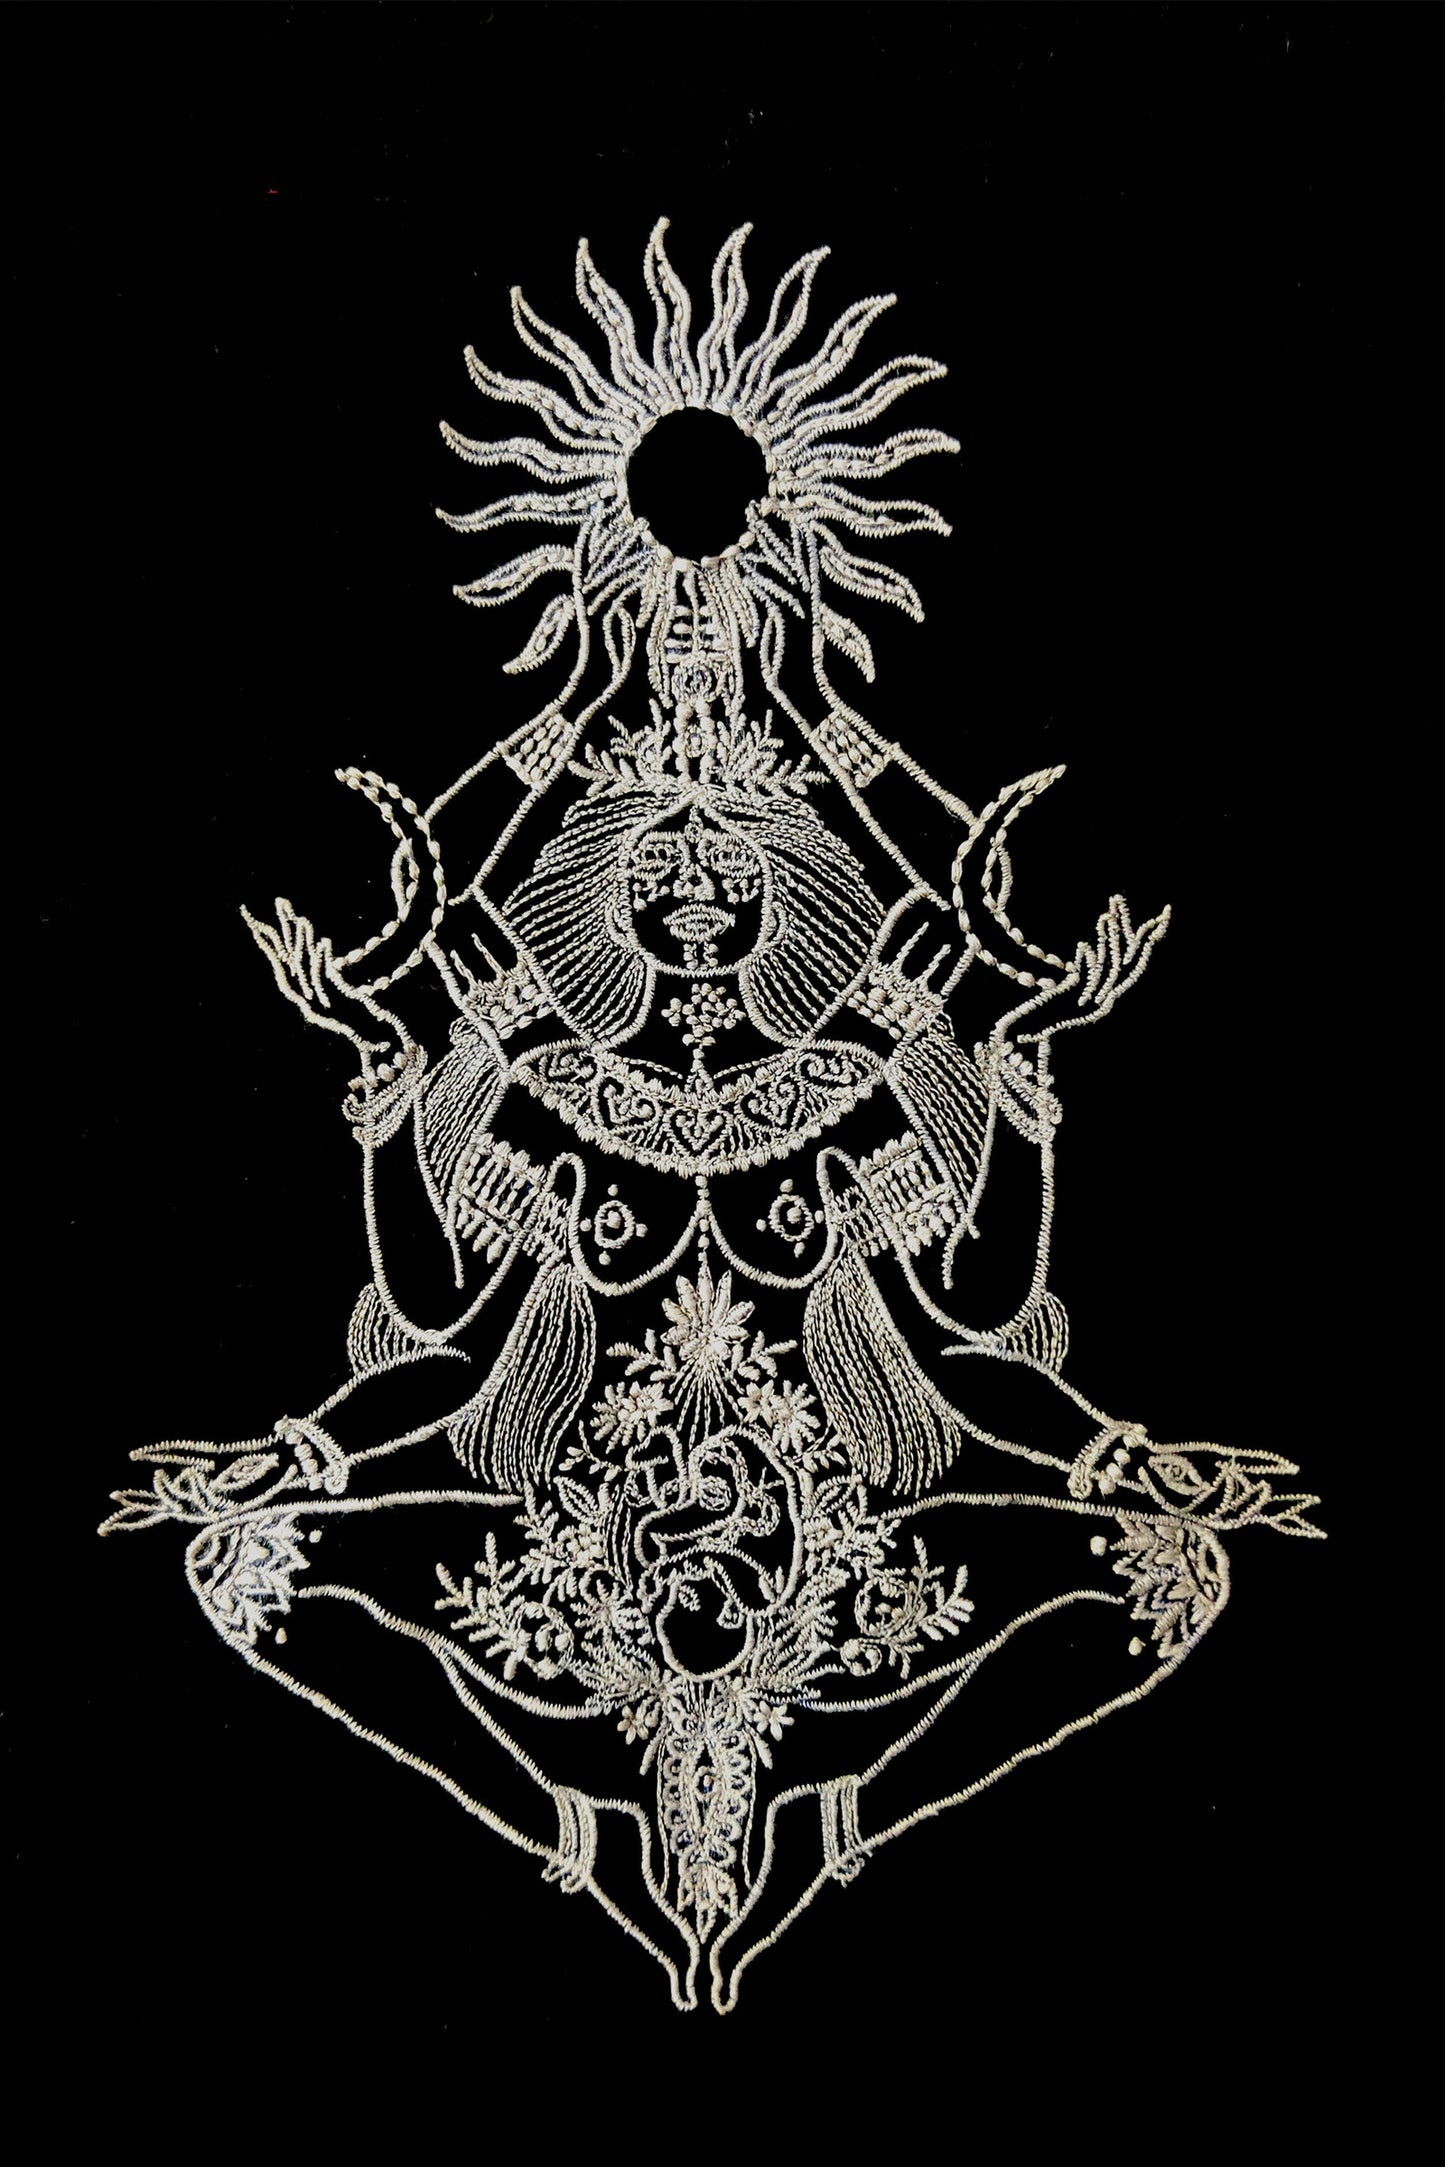 Goddess Kali Embroidered Artwork Half Sleeve Black T-shirt For Women